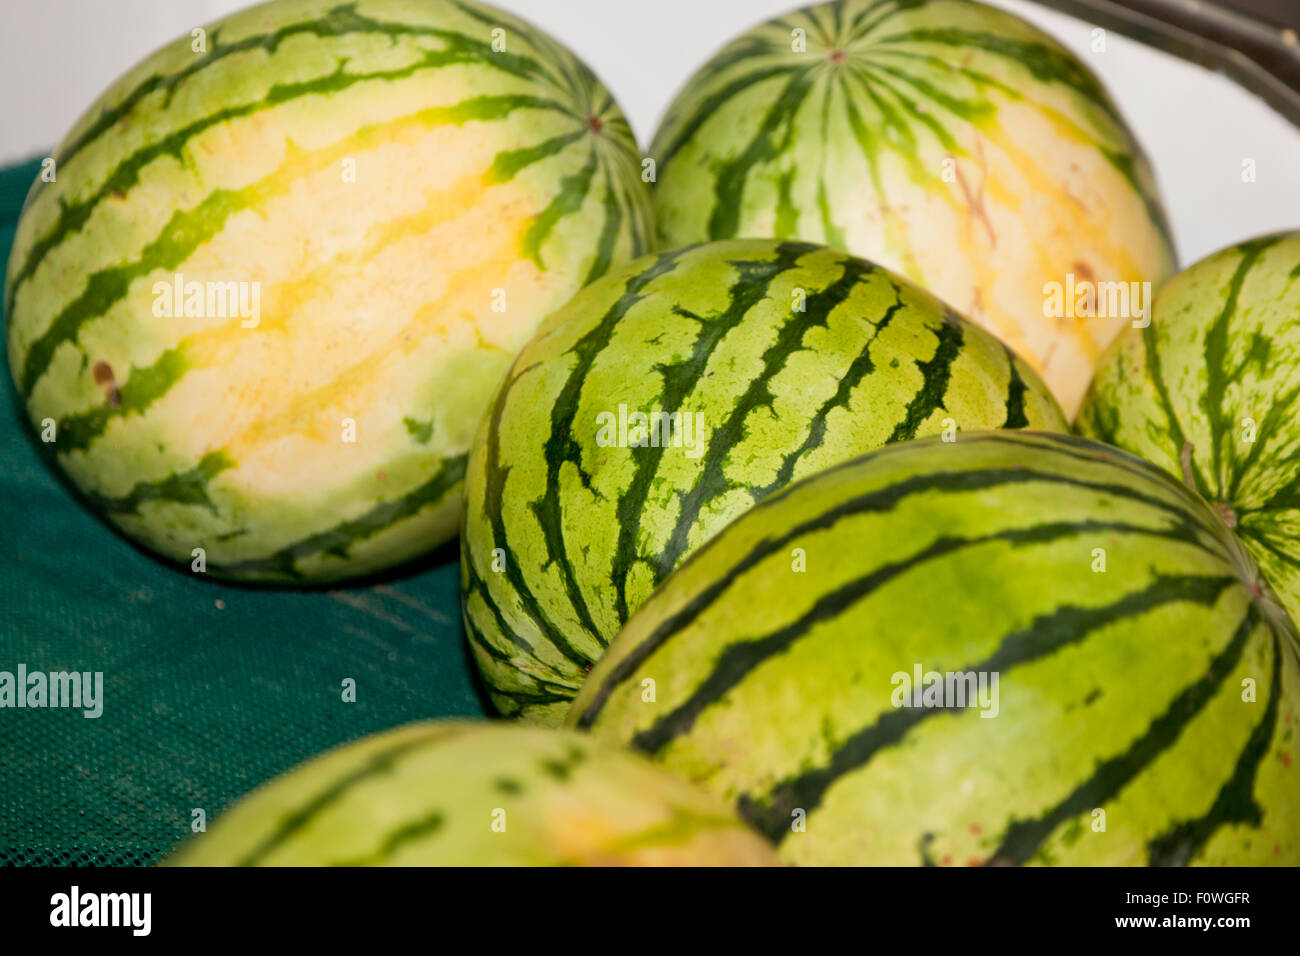 Wassermelonen mit dunkelgrünen Streifen und gelben Flecken, die zum Verkauf  in einem Teilbereich an eine Frucht zusammengefasst stehen in Washington  Stockfotografie - Alamy